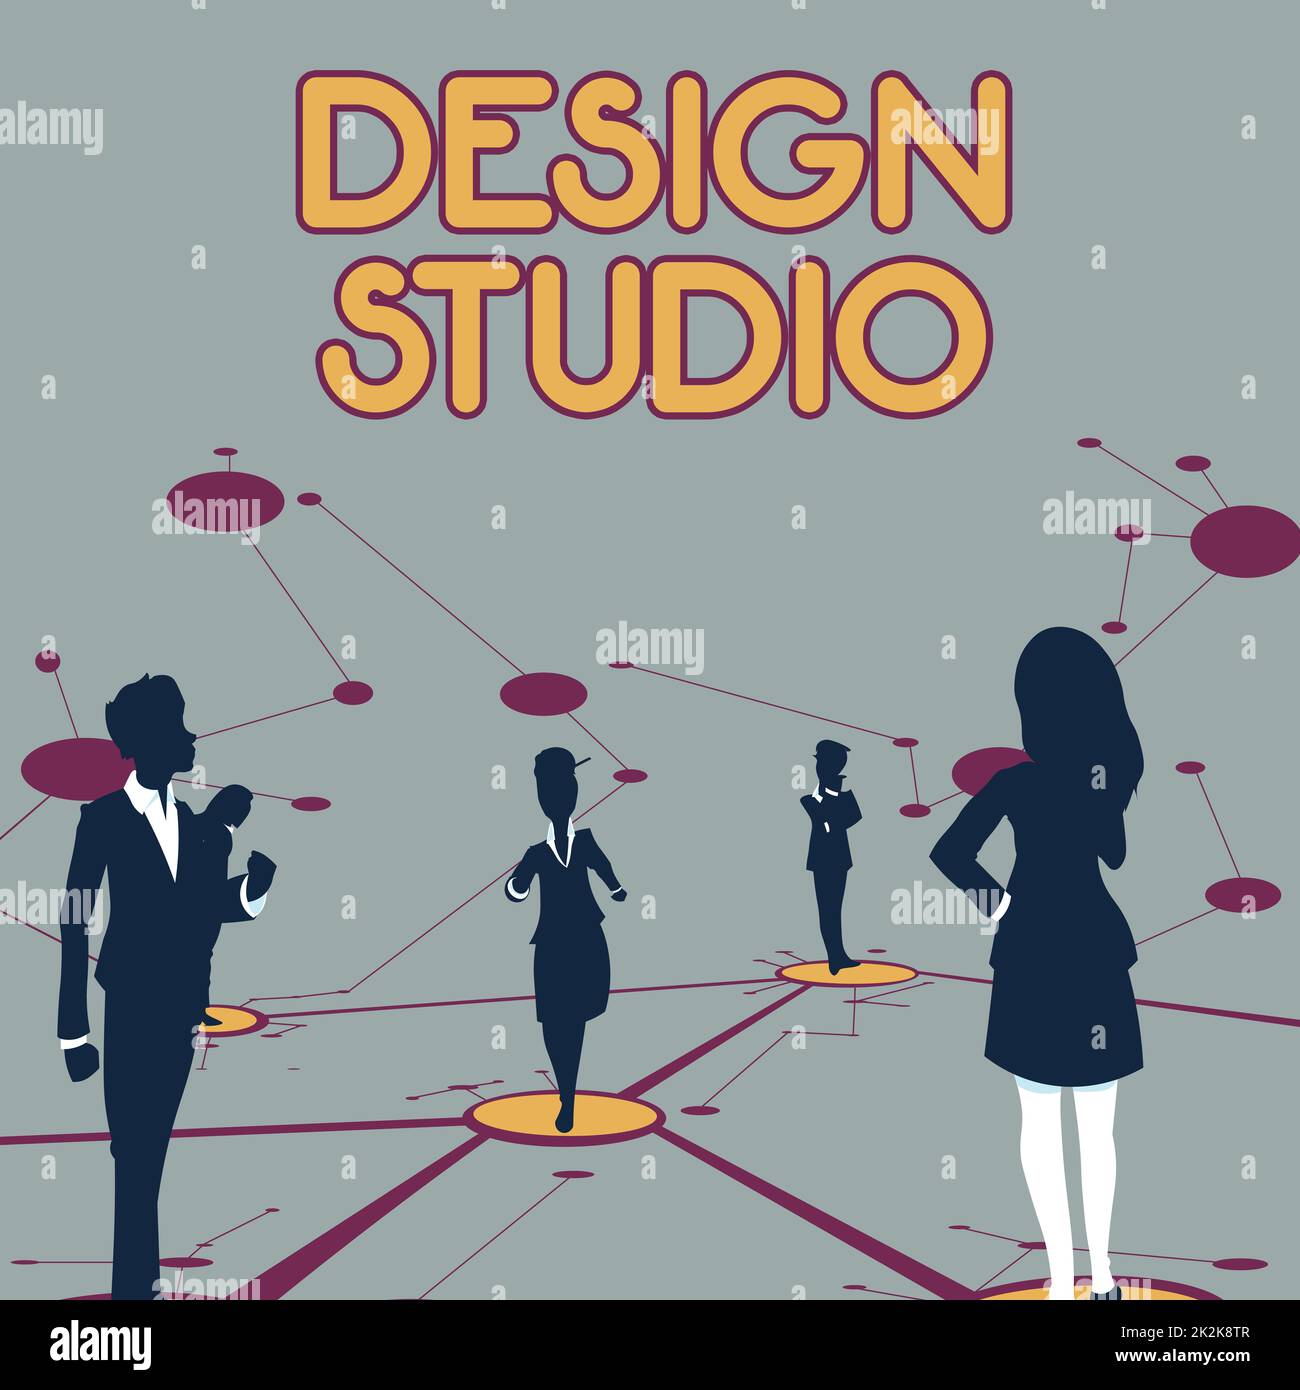 Textzeichen mit Design Studio. Arbeitsumgebung für Geschäftsideen für Designer und Kunsthandwerker, die mehrere Teammitglieder zusammenstellen, die getrennte, vernetzte Linien auf dem Boden bilden. Stockfoto